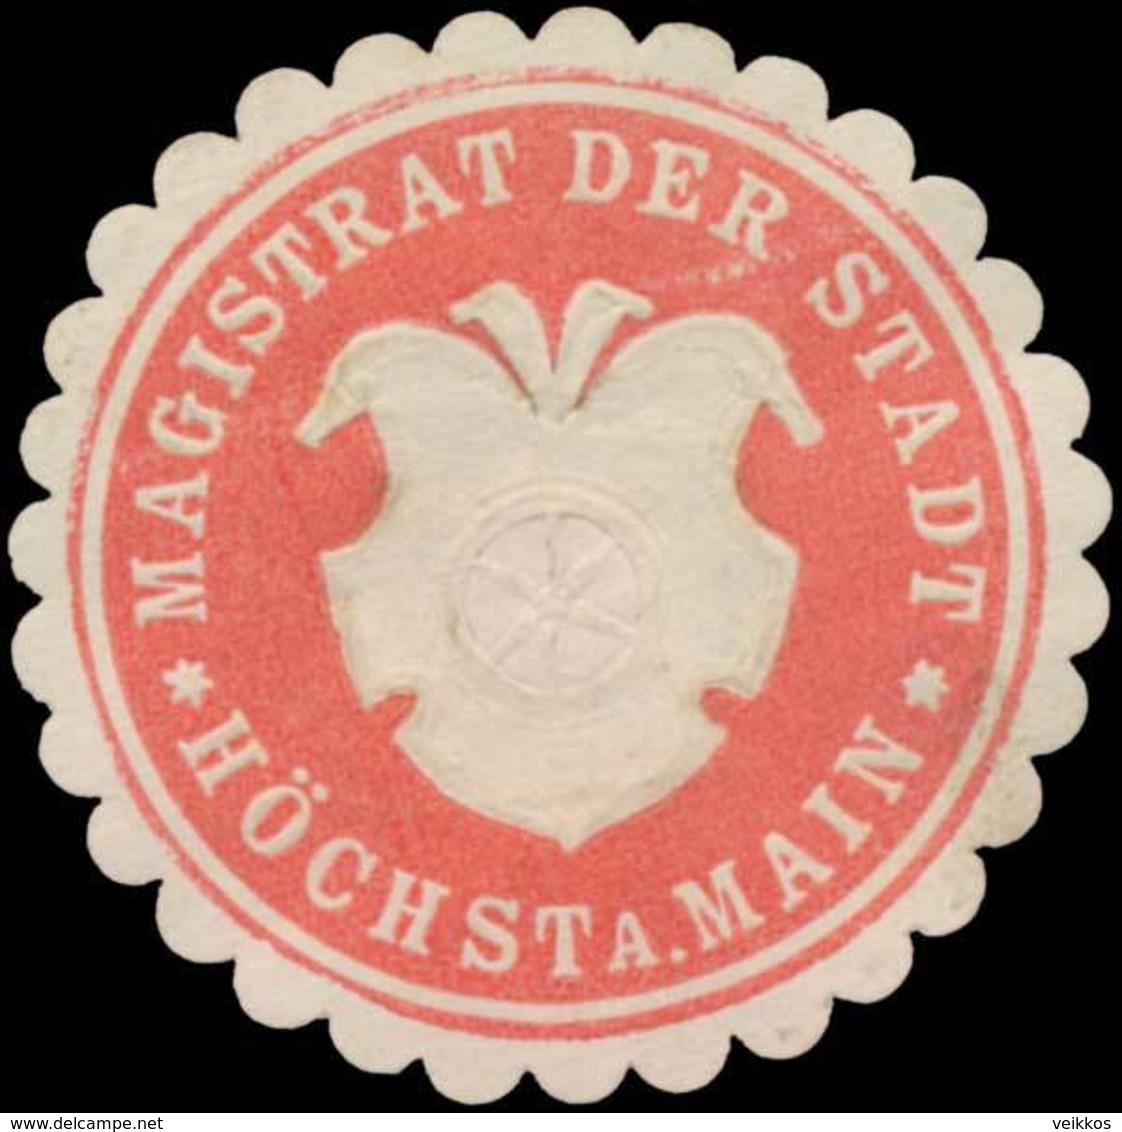 Höchst/Main: Magistrat Der Stadt Höchst Am Main Siegelmarke - Cinderellas